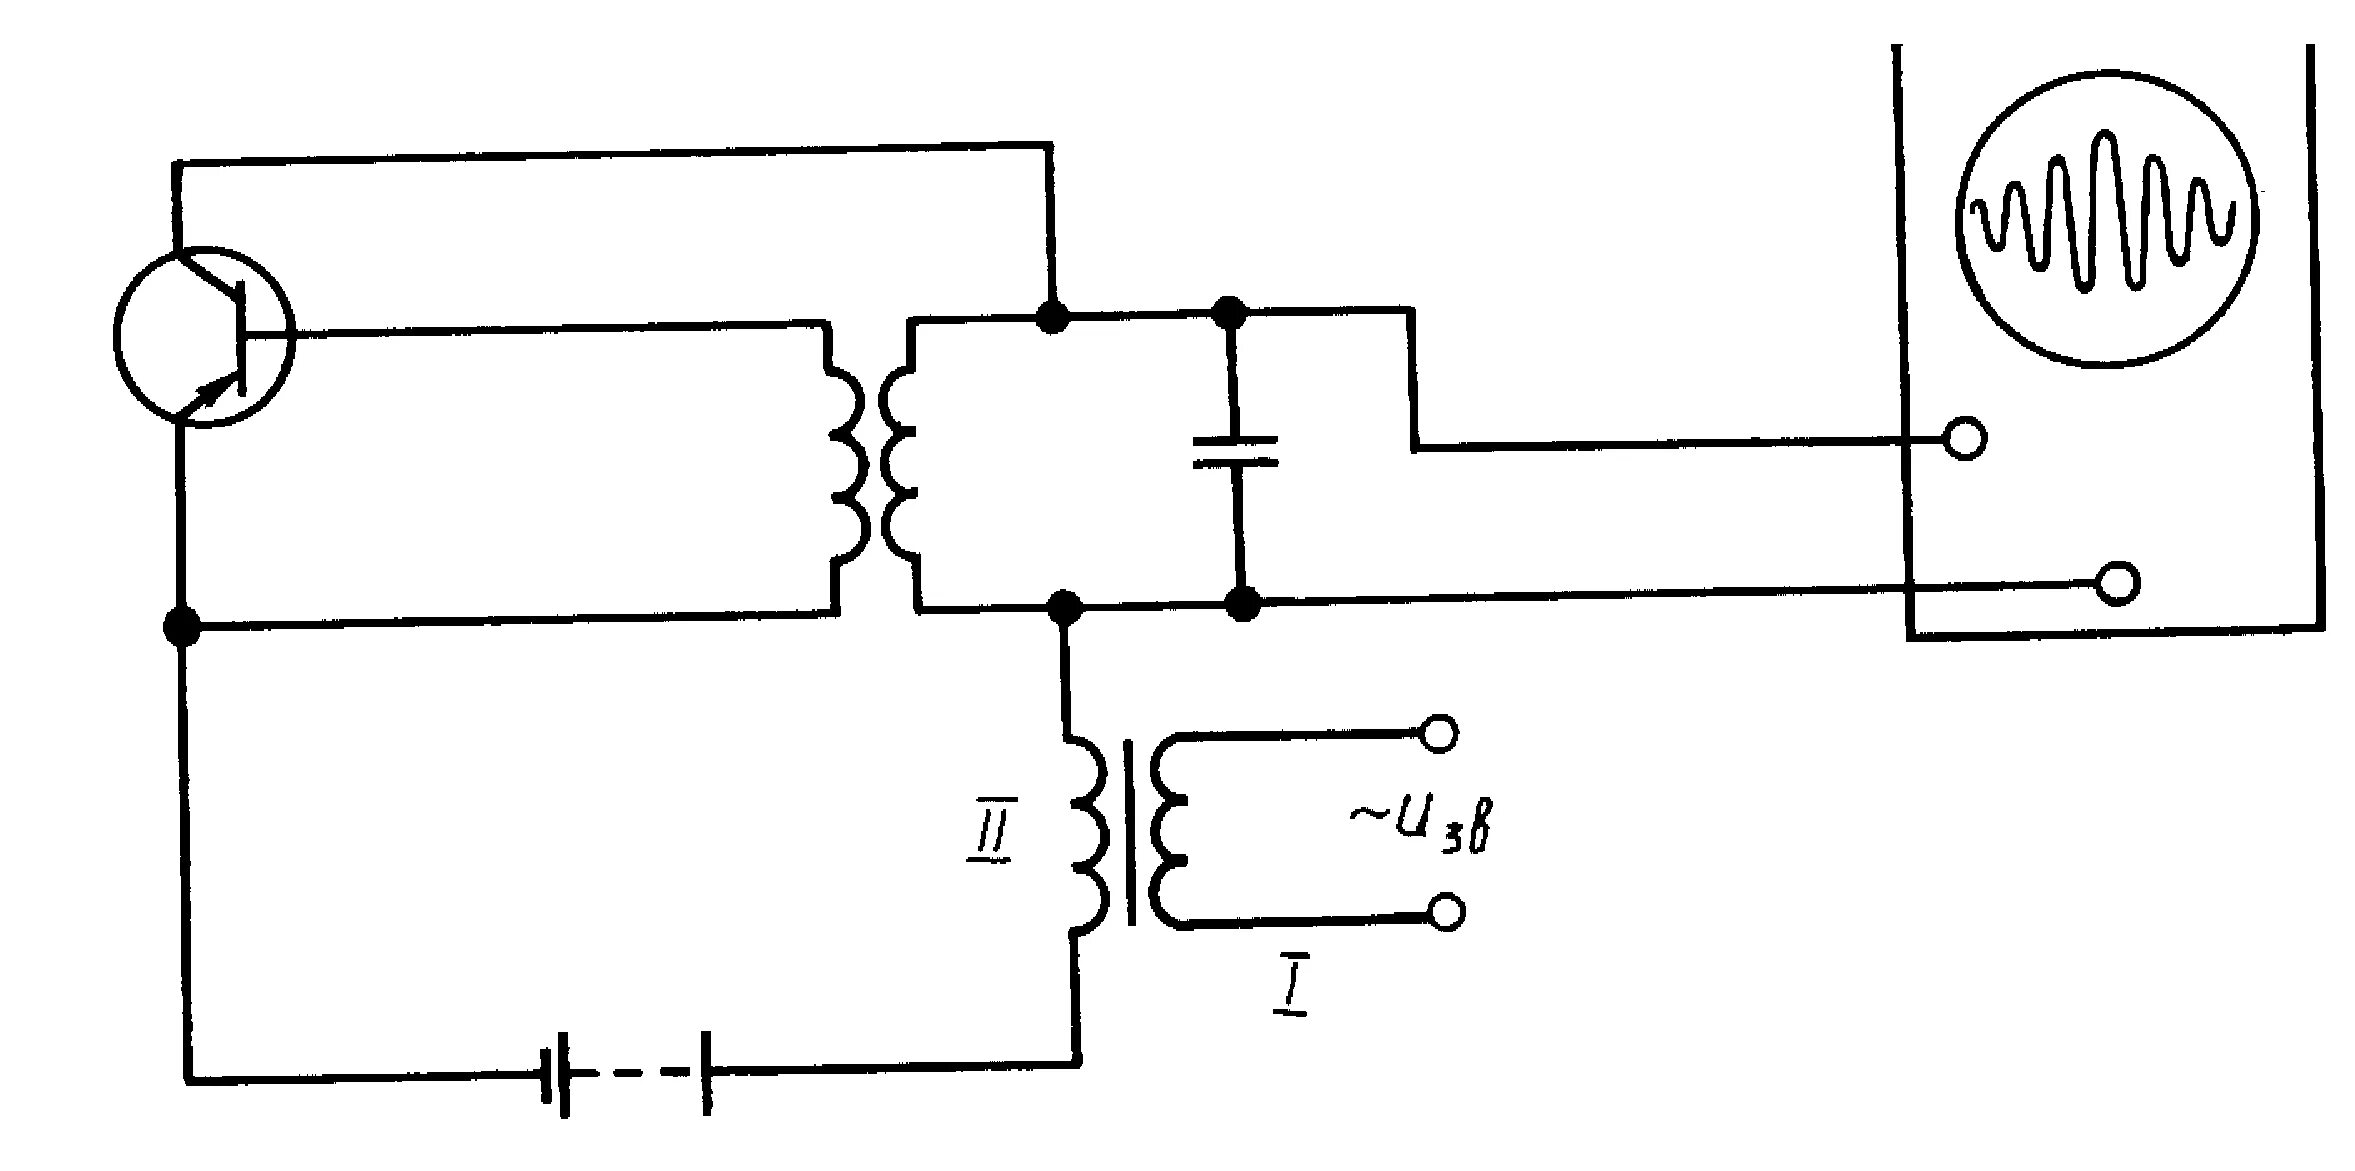 Модуляция генератора. Амплитудная модуляция схема модулятора. Схема генератора высокочастотных колебаний. Амплитудный модулятор на транзисторе схема. Генератор несущей частоты модулятор модуляционный трансформатор.